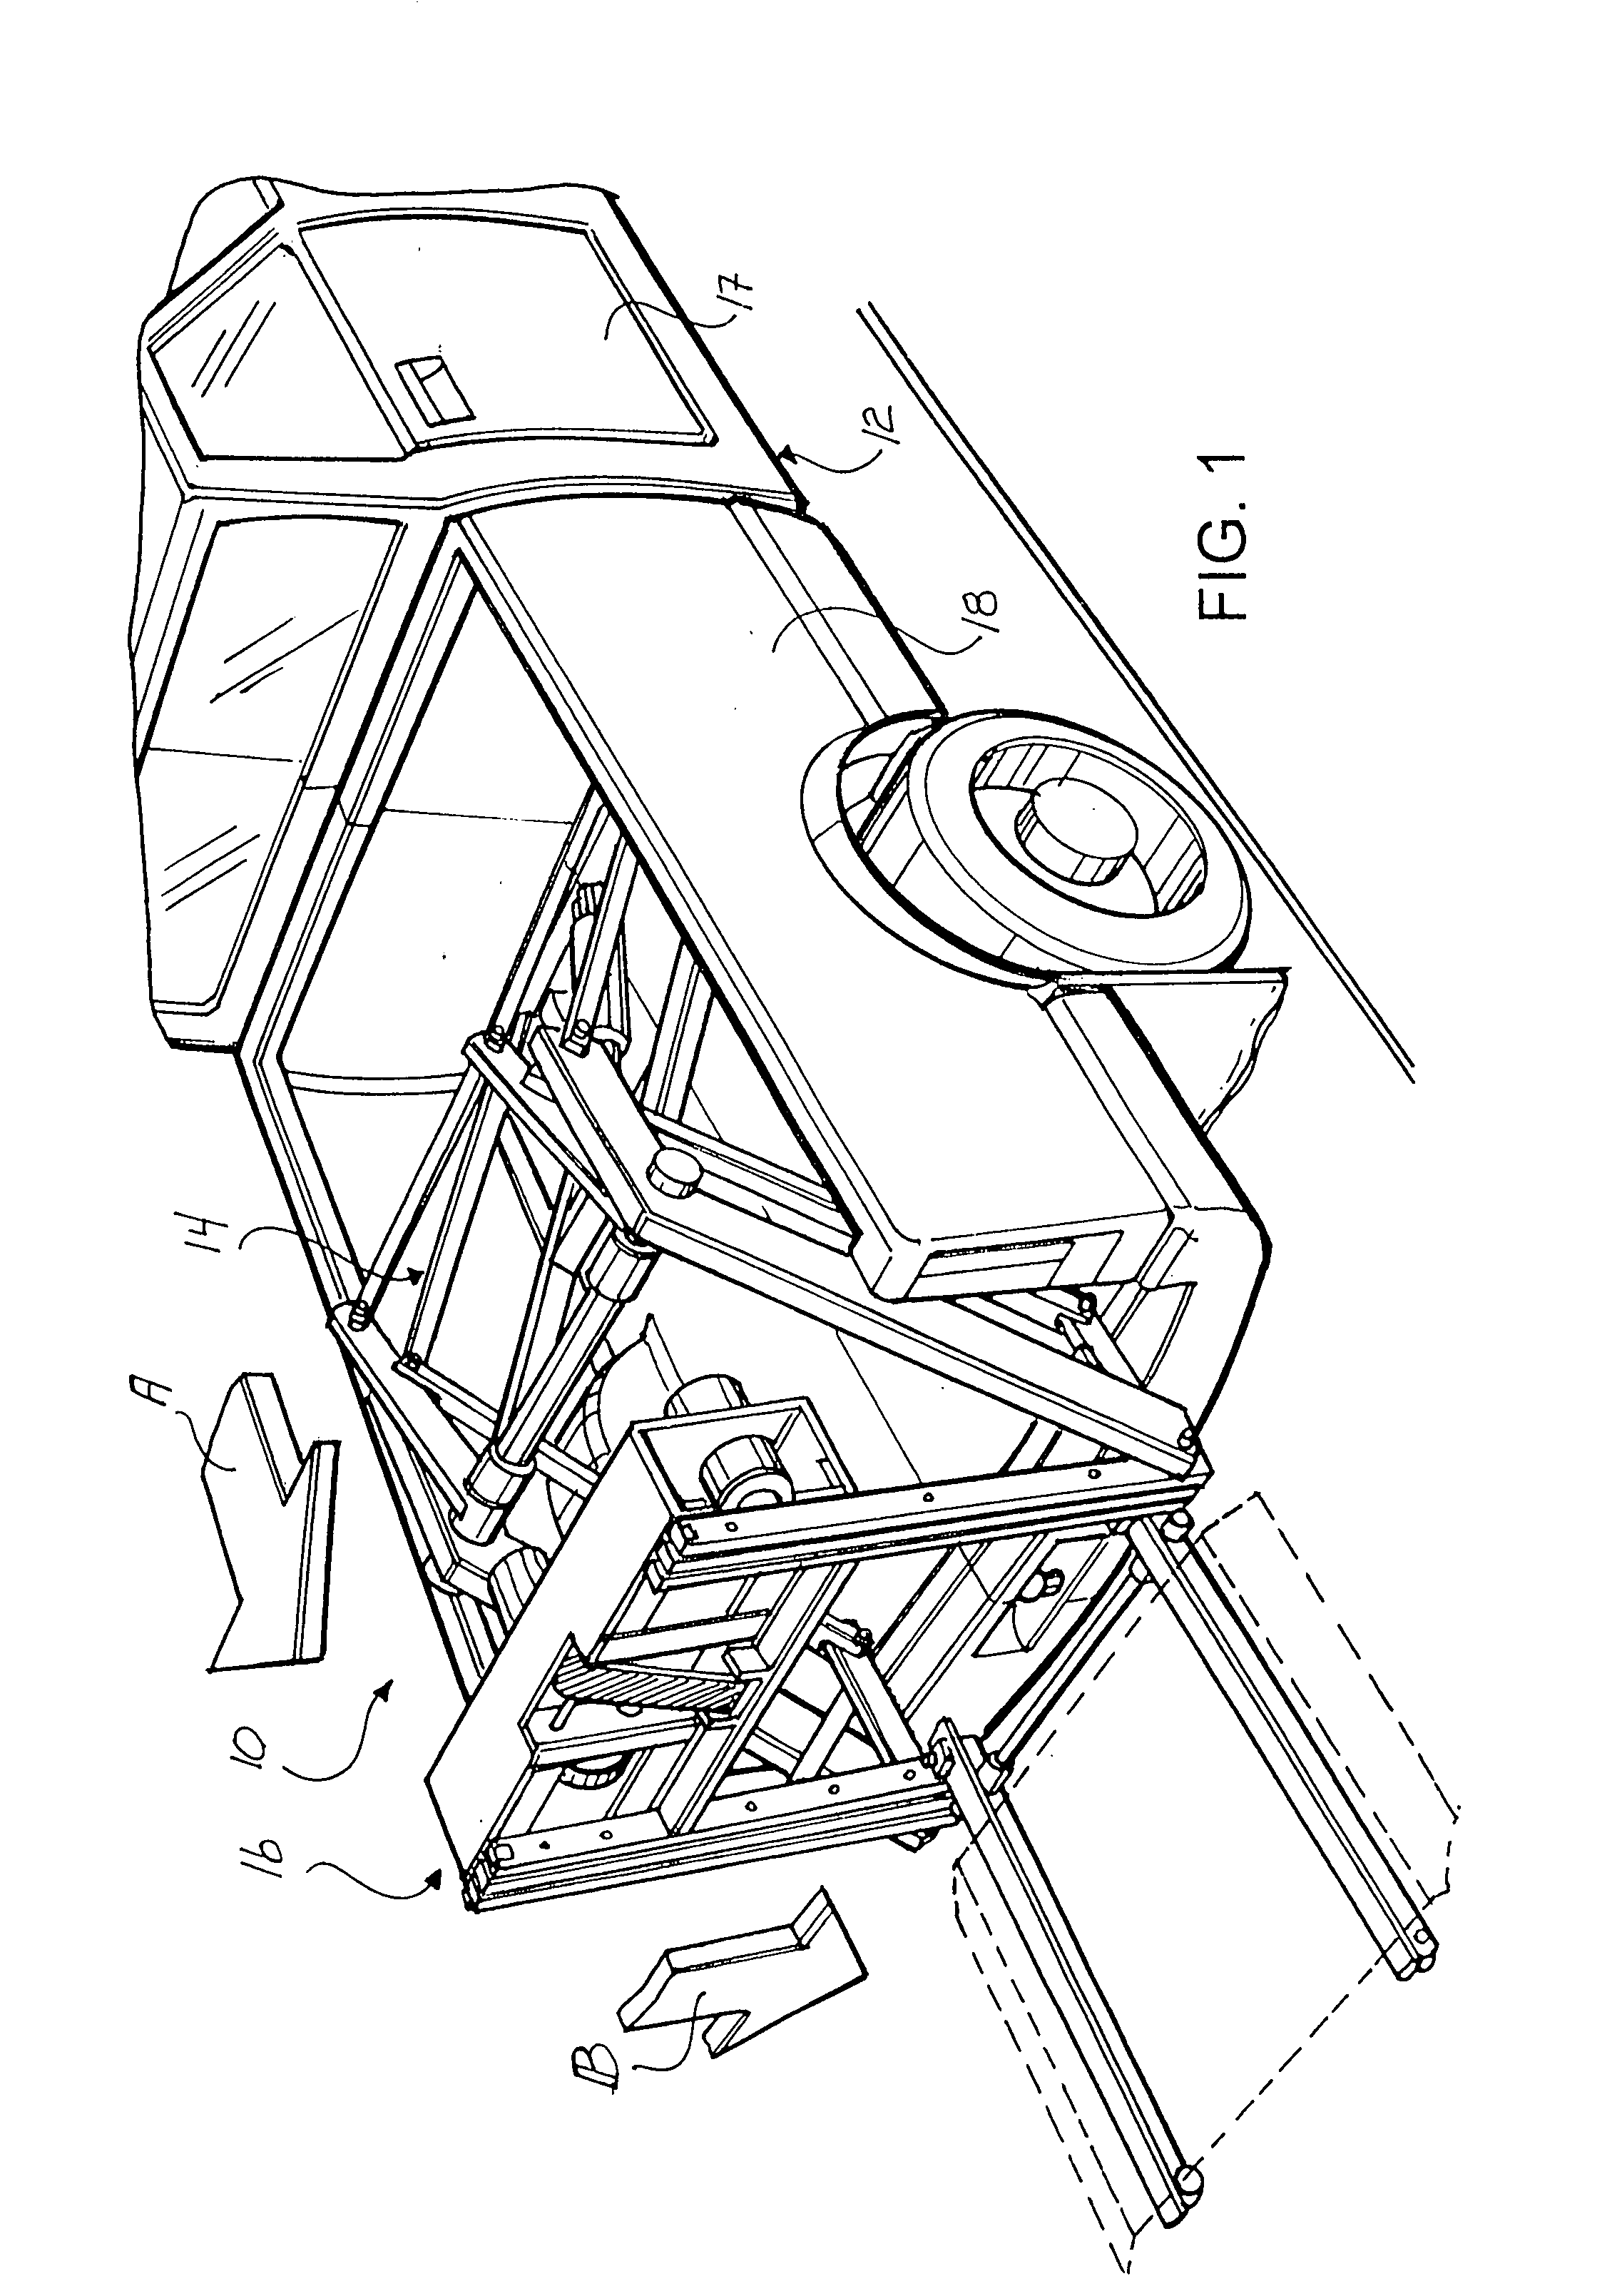 Vehicle loader mechanism